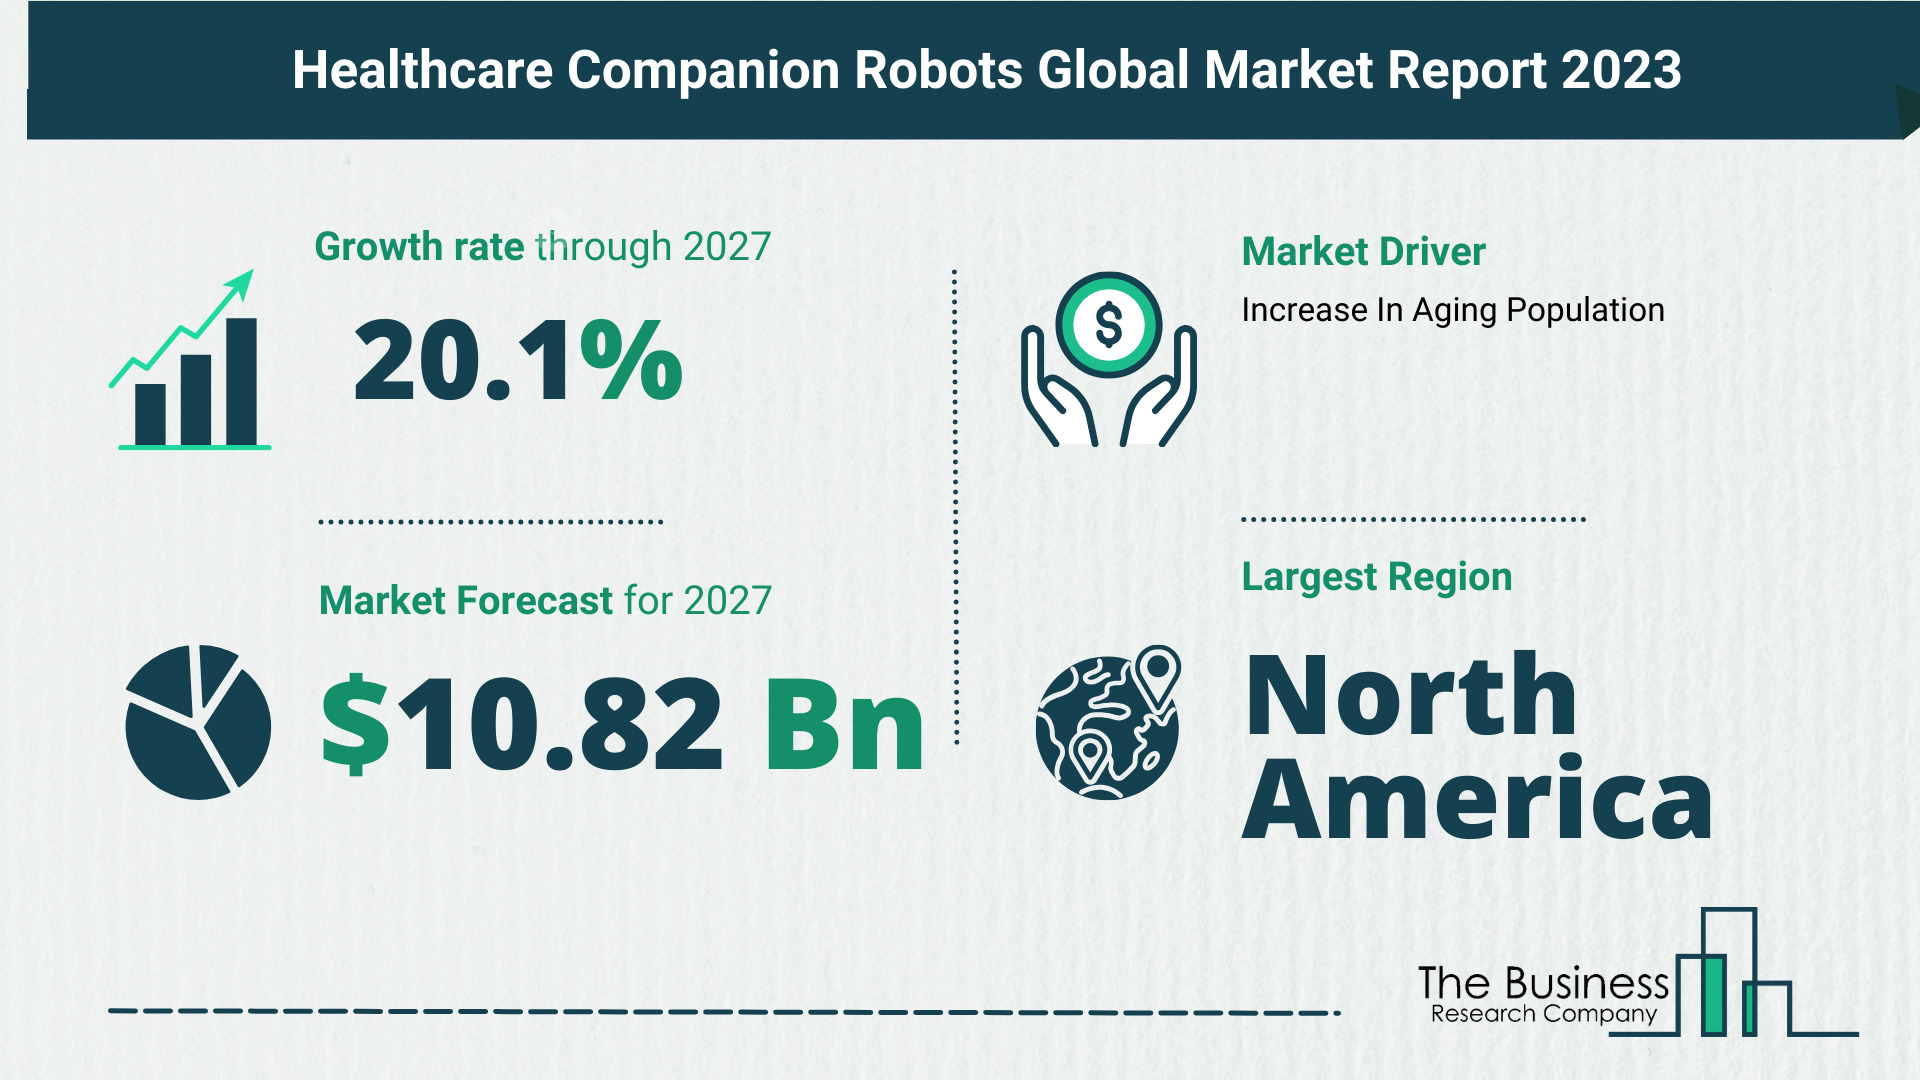 Healthcare Companion Robots Market Size